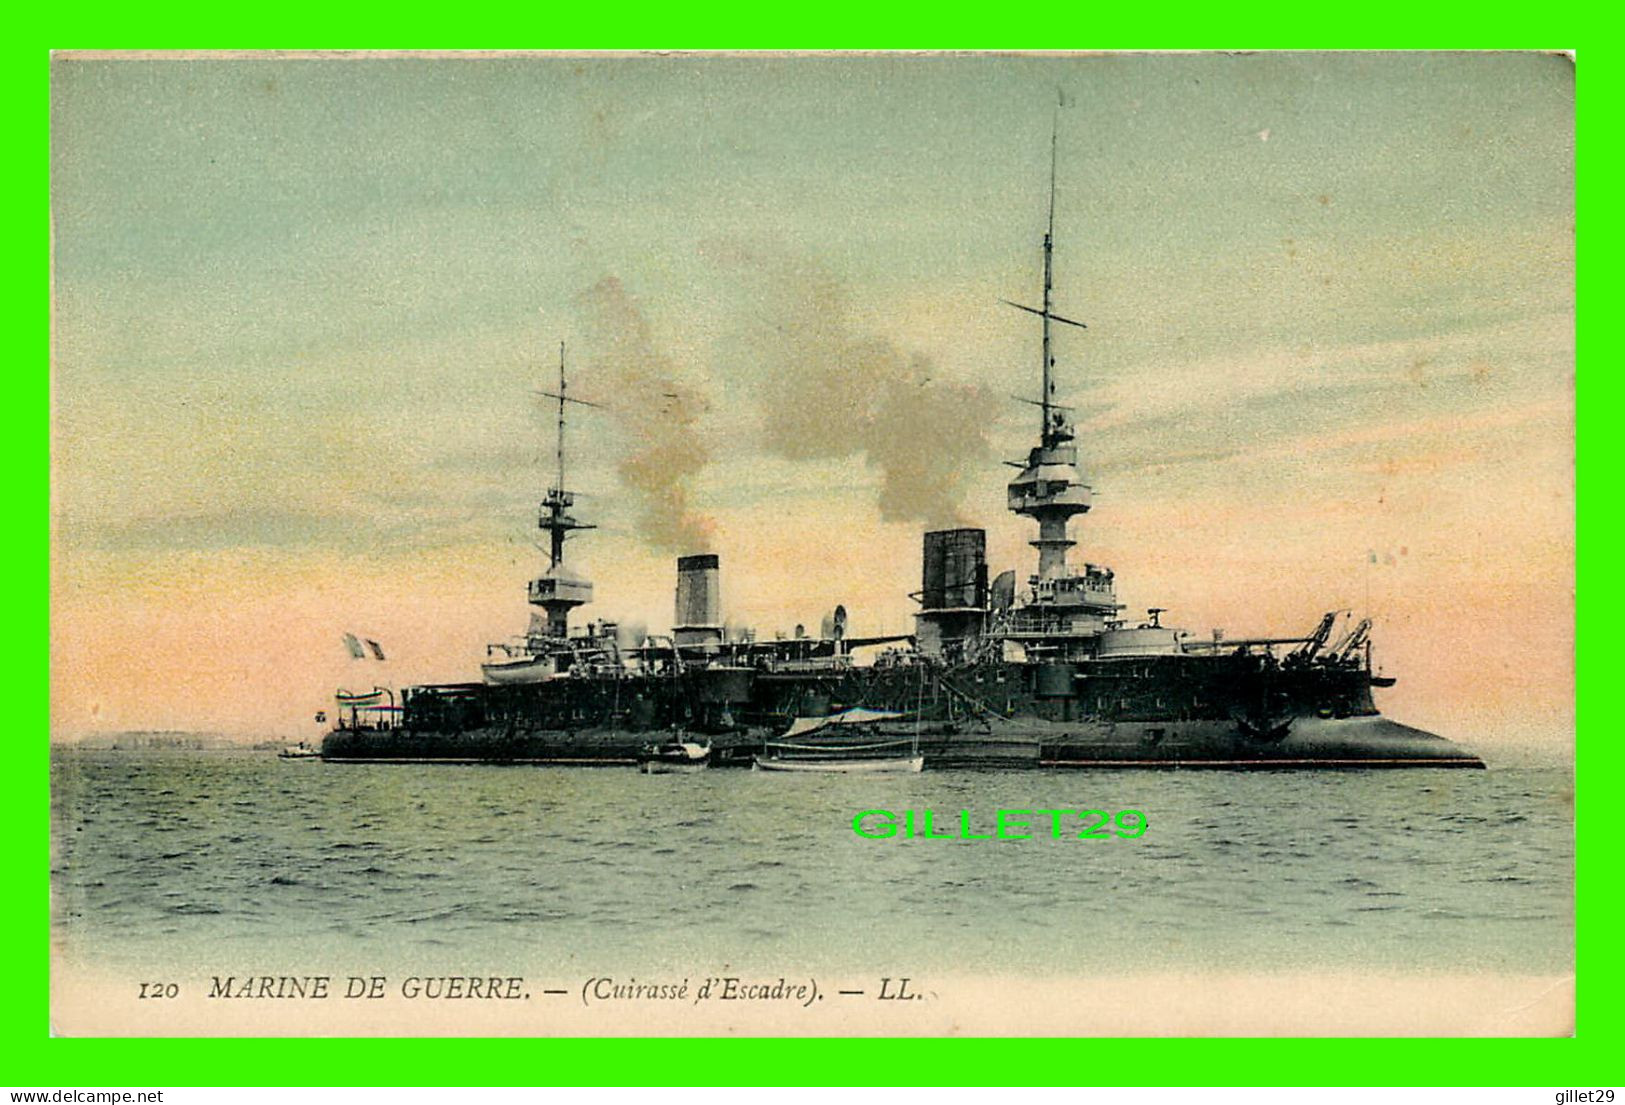 SHIP, BATEAU, MARINE DE GUERRE - CUIRASSÉ D'ESCADRE - LL. - - Warships